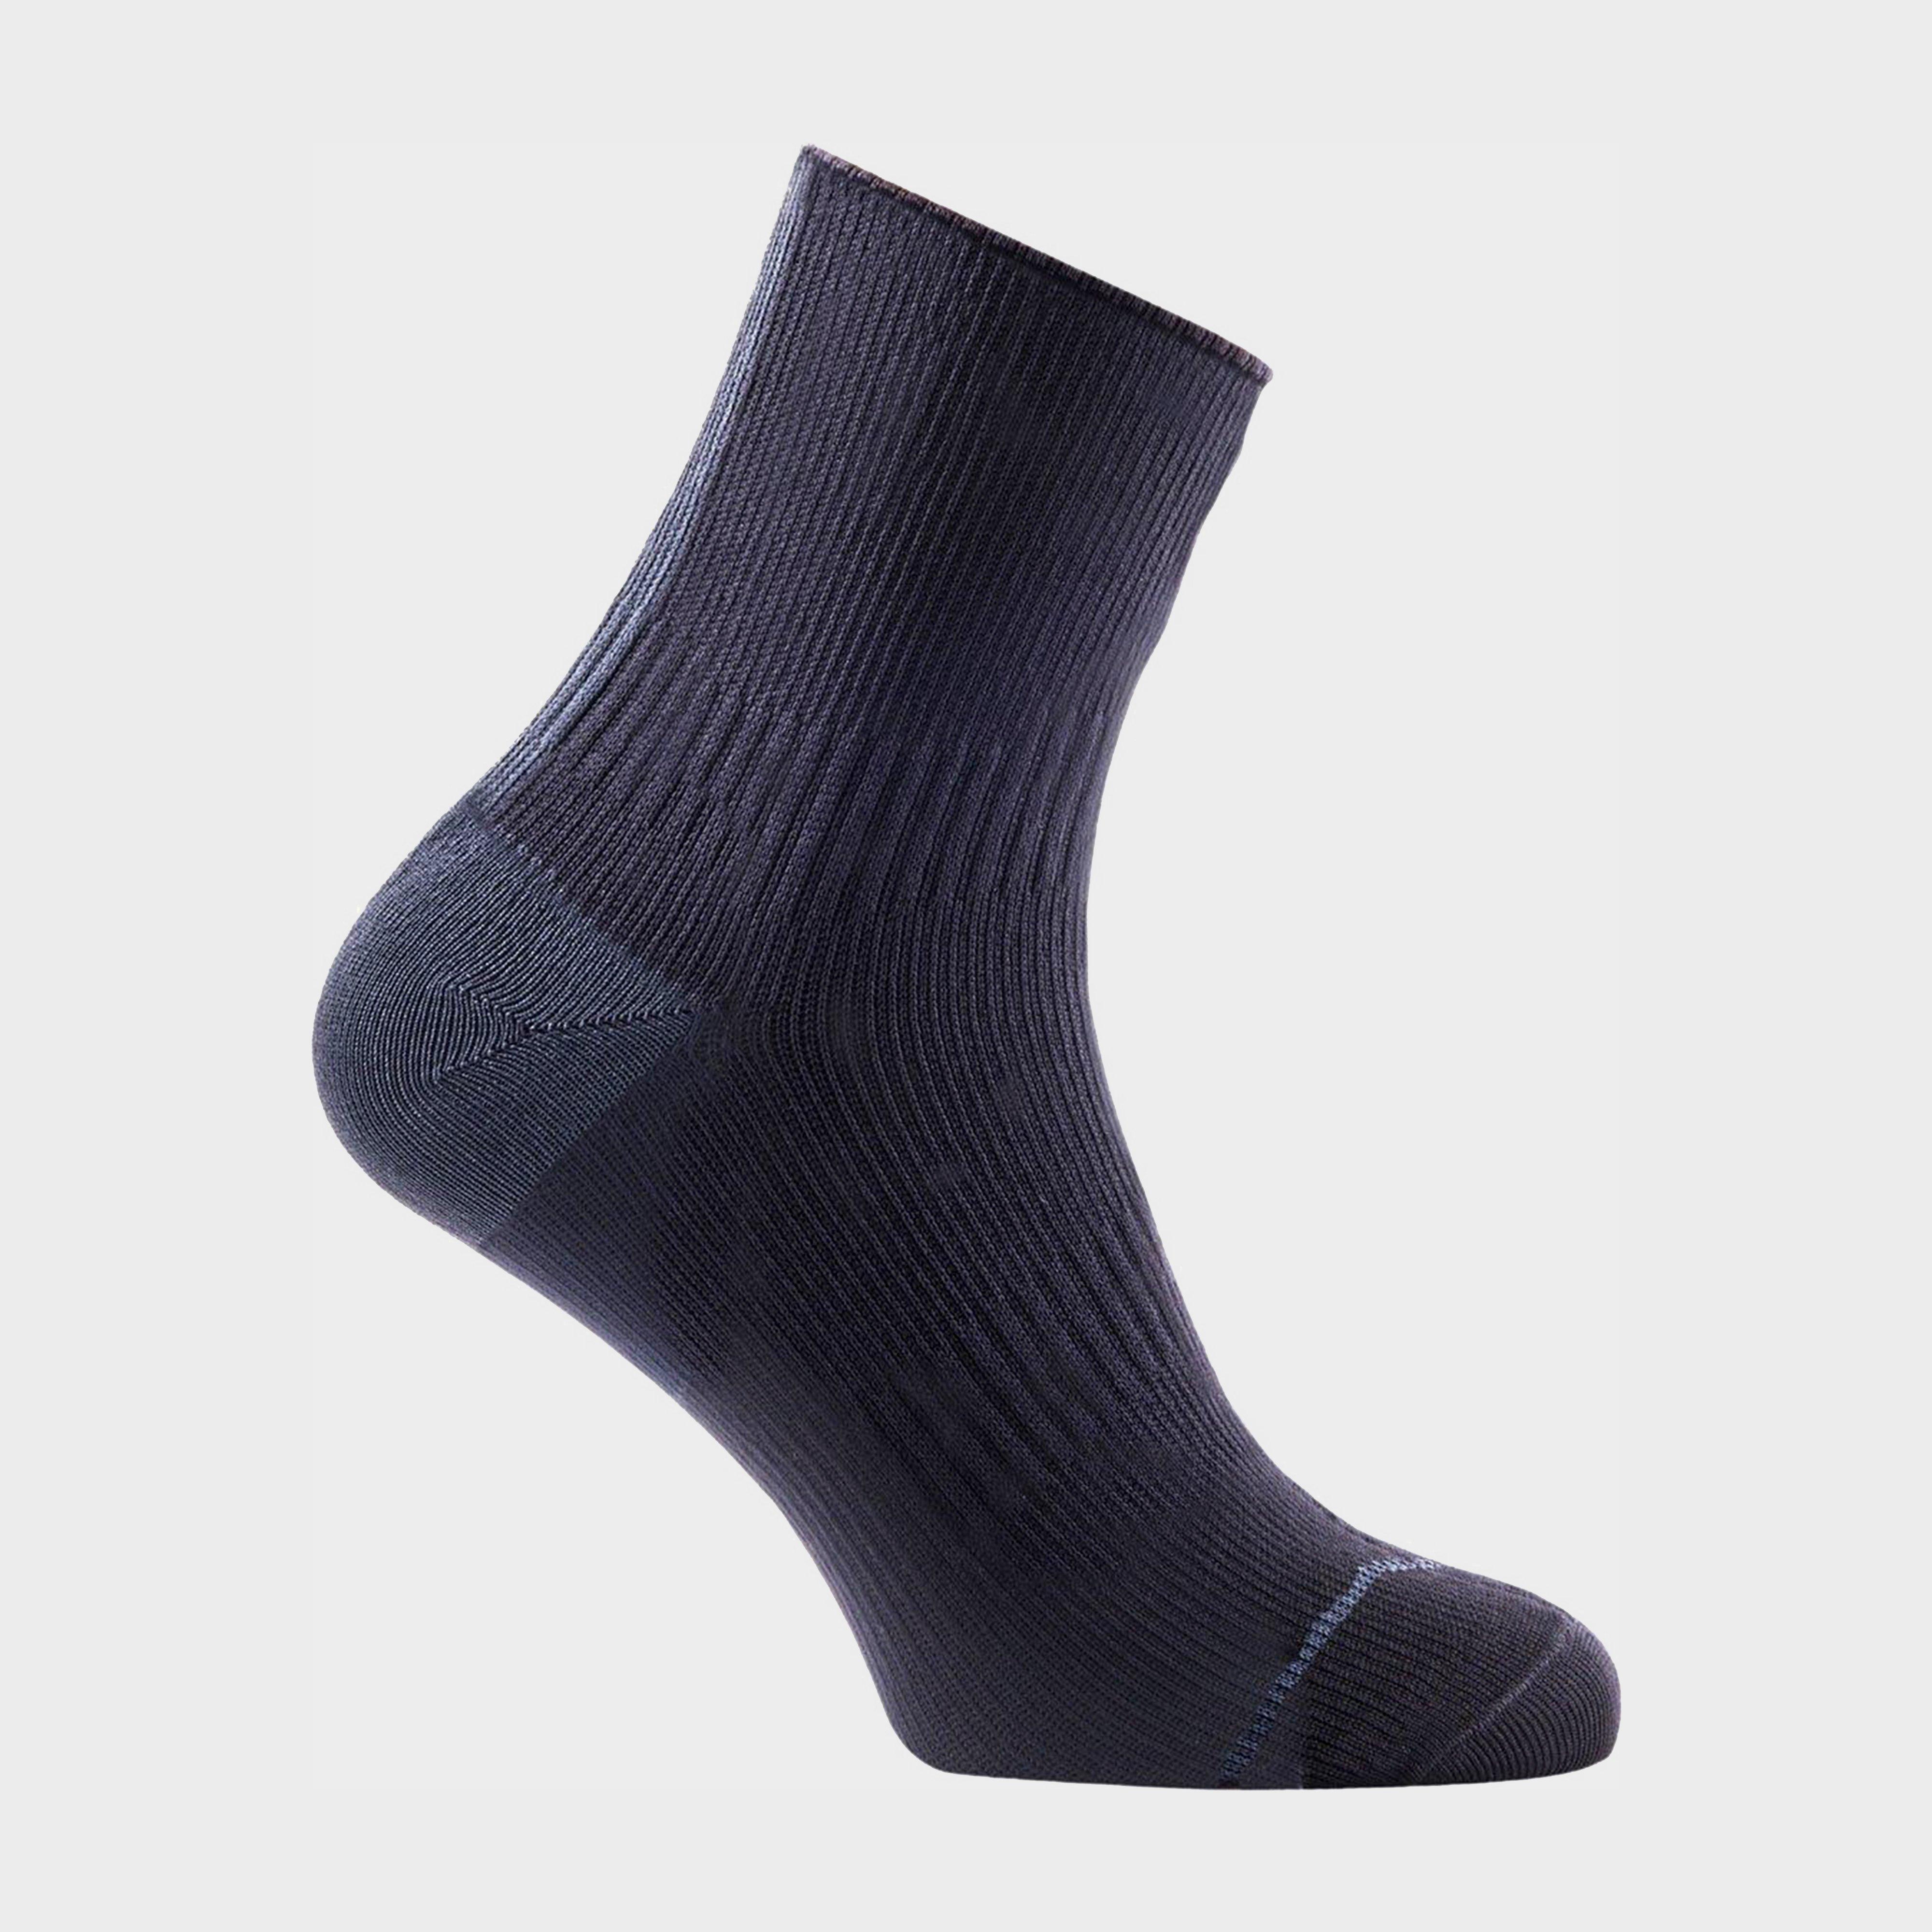 Sealskinz Thin Ankle Hydrostop Waterproof Socks Review